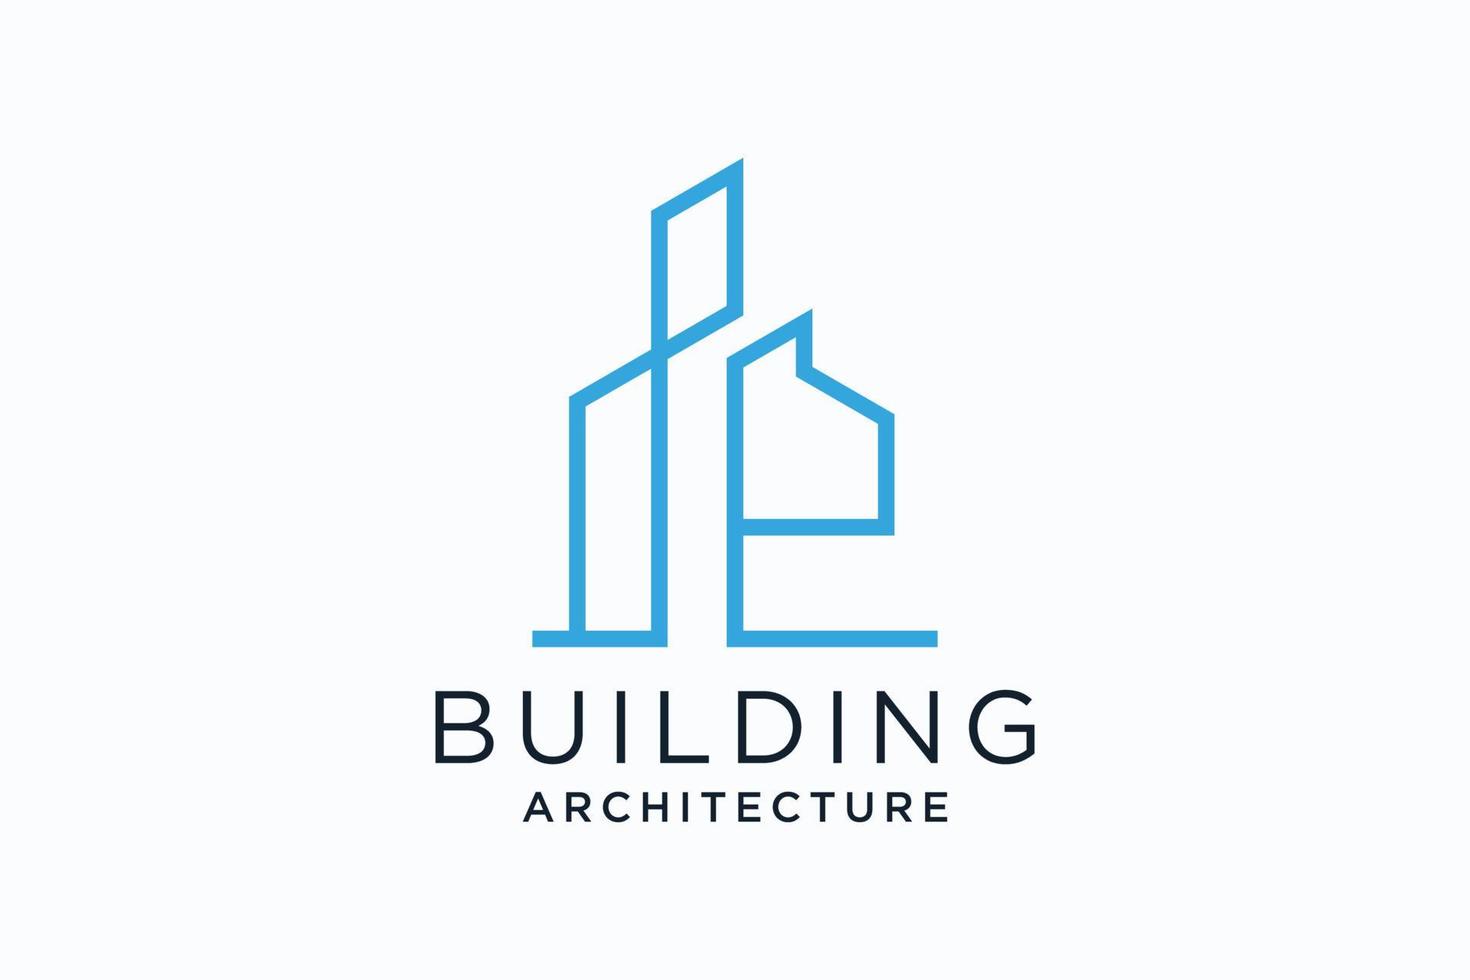 lettre e pour le logo de remodelage immobilier. construction architecture bâtiment élément de modèle de conception de logo. vecteur